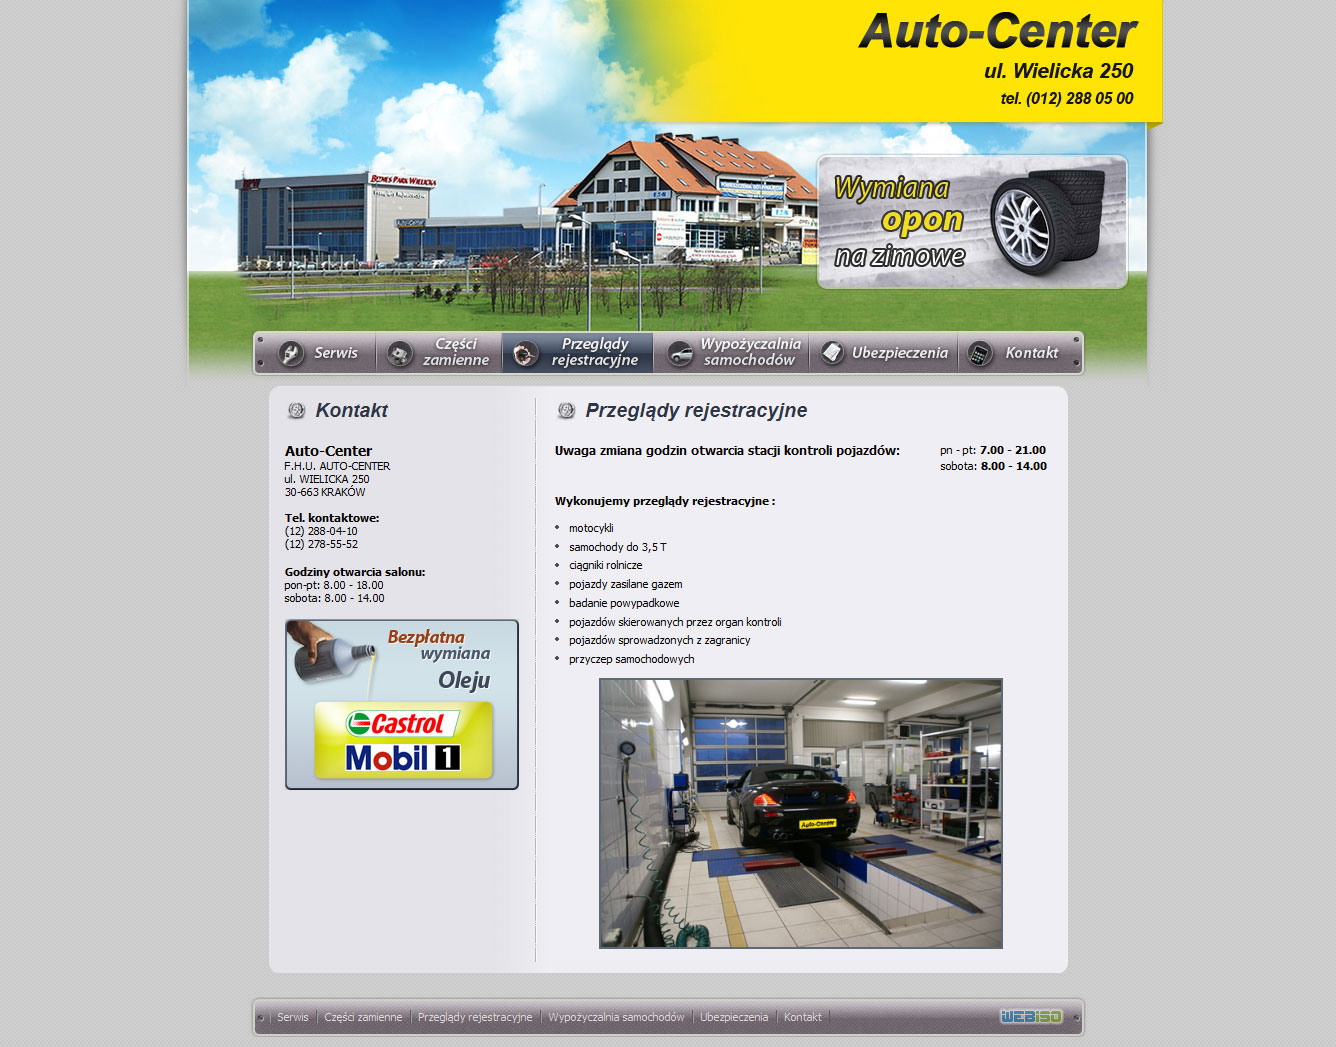 autocenter-przeglady-rekestracyjne.jpg